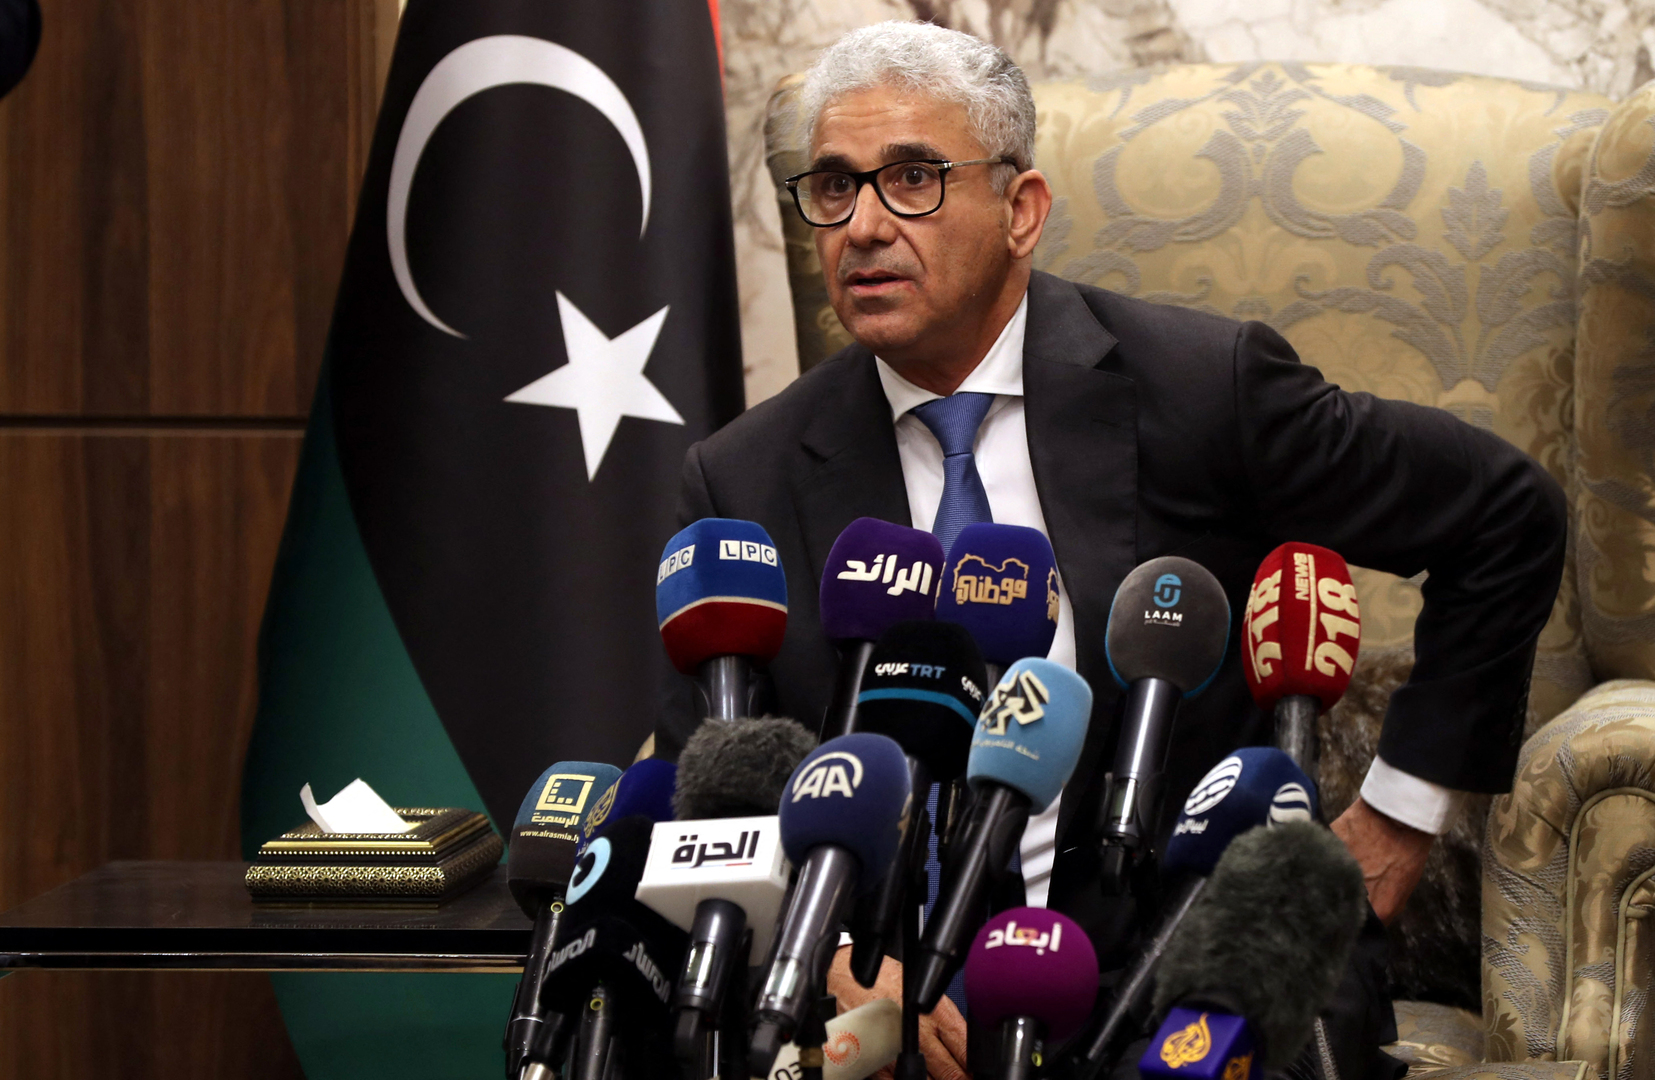 ريس الوزراء الليبي المكلف يستبعد أي صدام مع السلطة الحالية